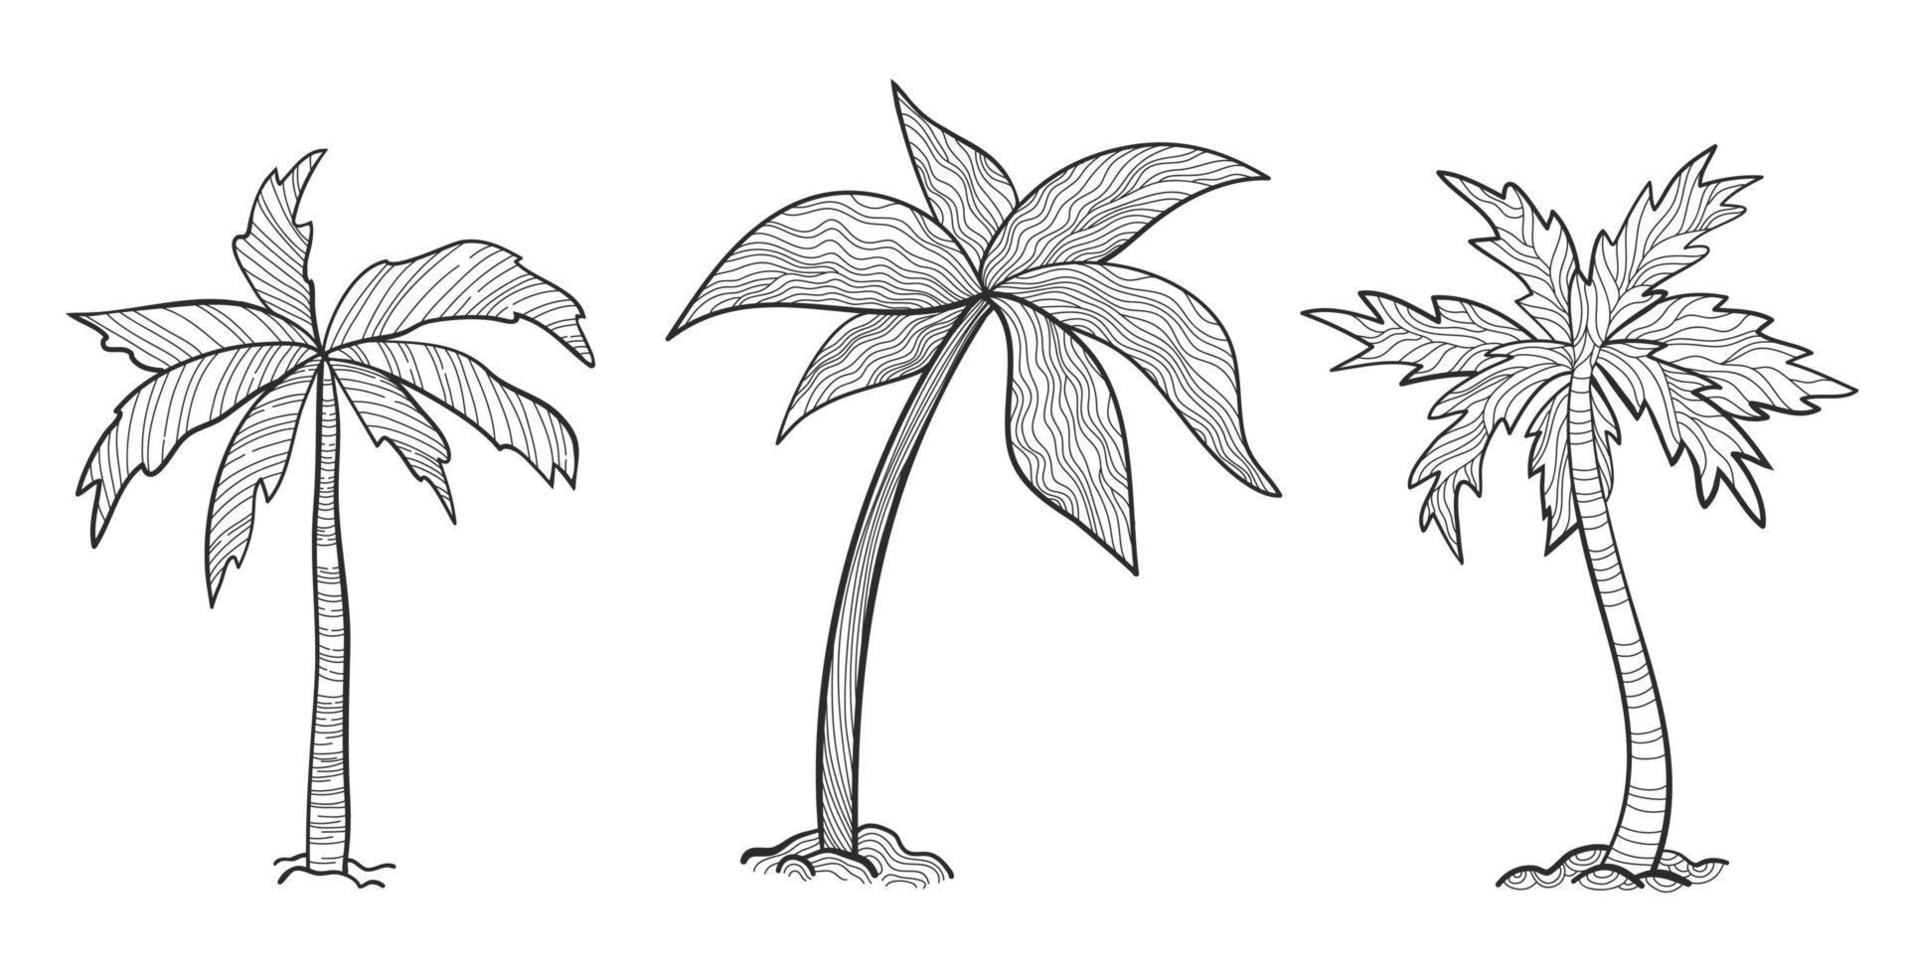 Set tropische Palmen mit Blättern, reifen und jungen Pflanzen, schwarze Silhouetten isoliert auf weißem Hintergrund. Skizzenstil für Ihr Design. vektor